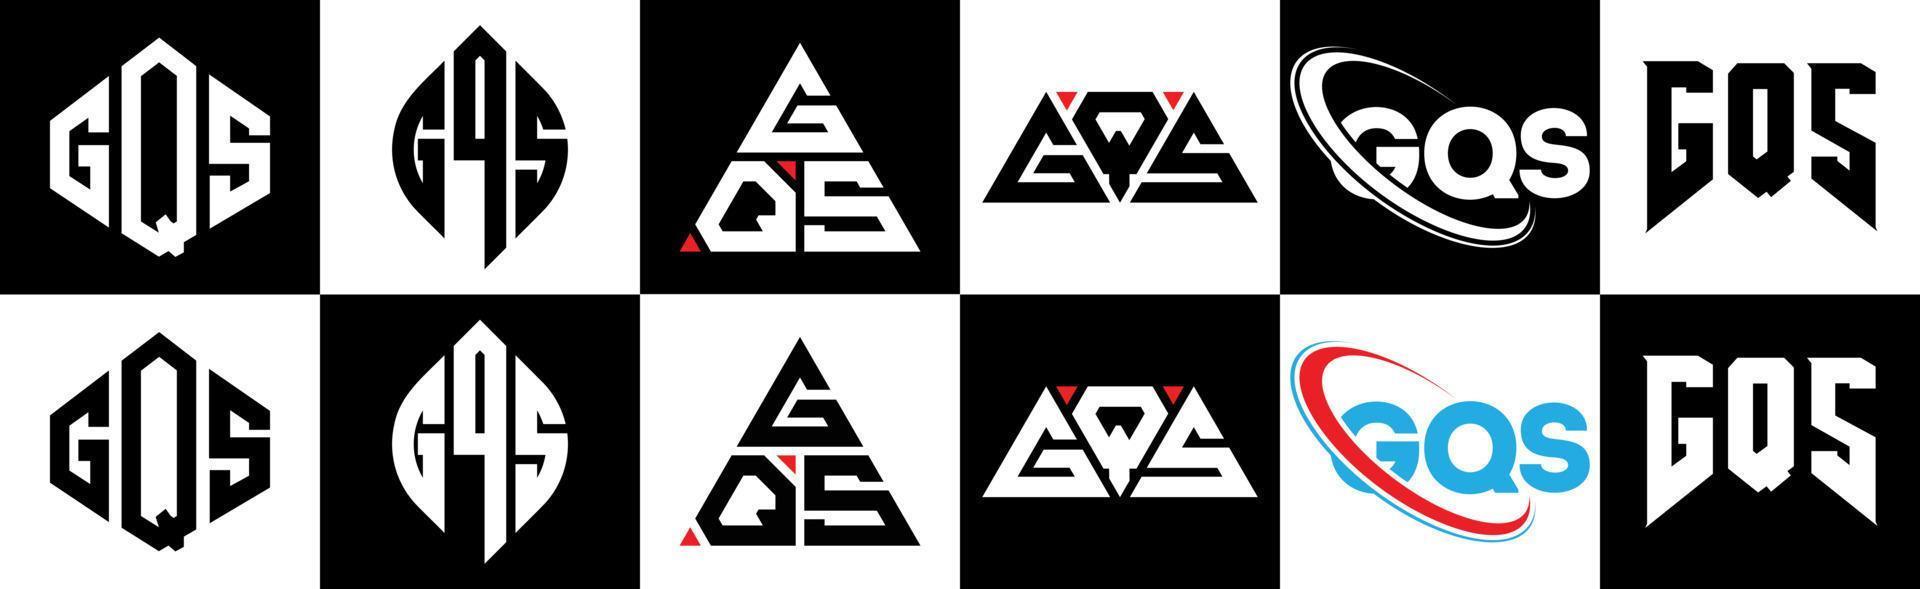 Diseño de logotipo de letra gqs en seis estilos. gqs polígono, círculo, triángulo, hexágono, estilo plano y simple con logotipo de letra de variación de color blanco y negro en una mesa de trabajo. logotipo minimalista y clásico de gqs vector